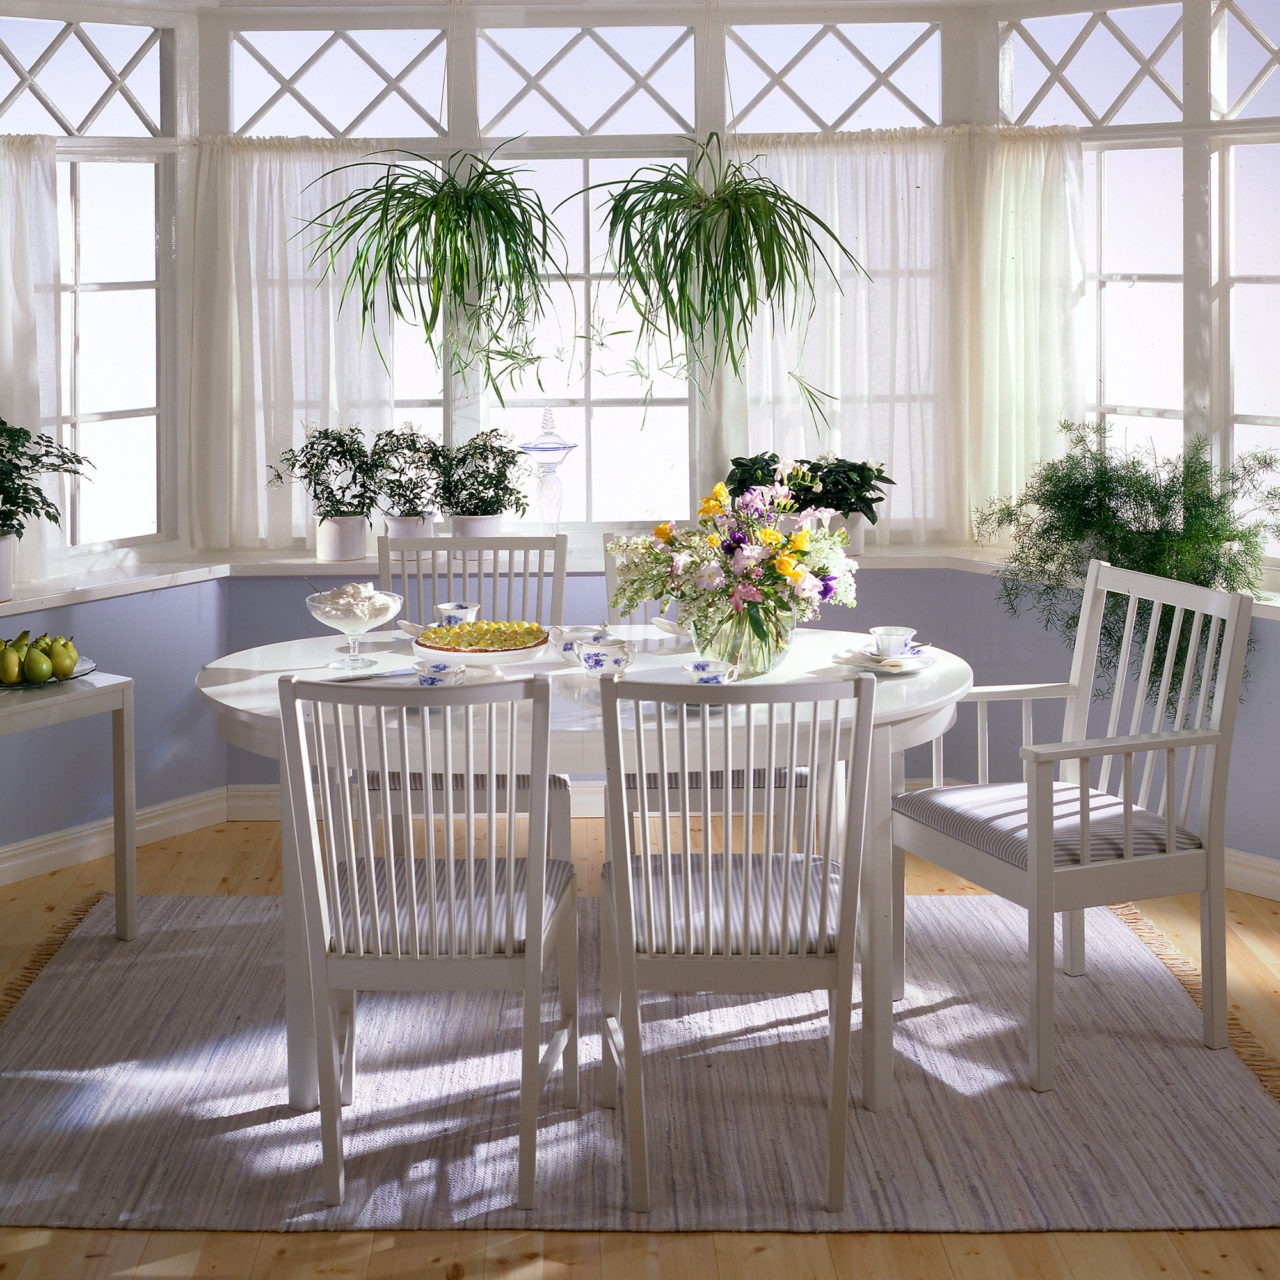 Pinnstolar med och utan armstöd runt ett elliptiskt matbord, allt vitt i modell STOCKHOLM, i ett ljust rum med burspråk.